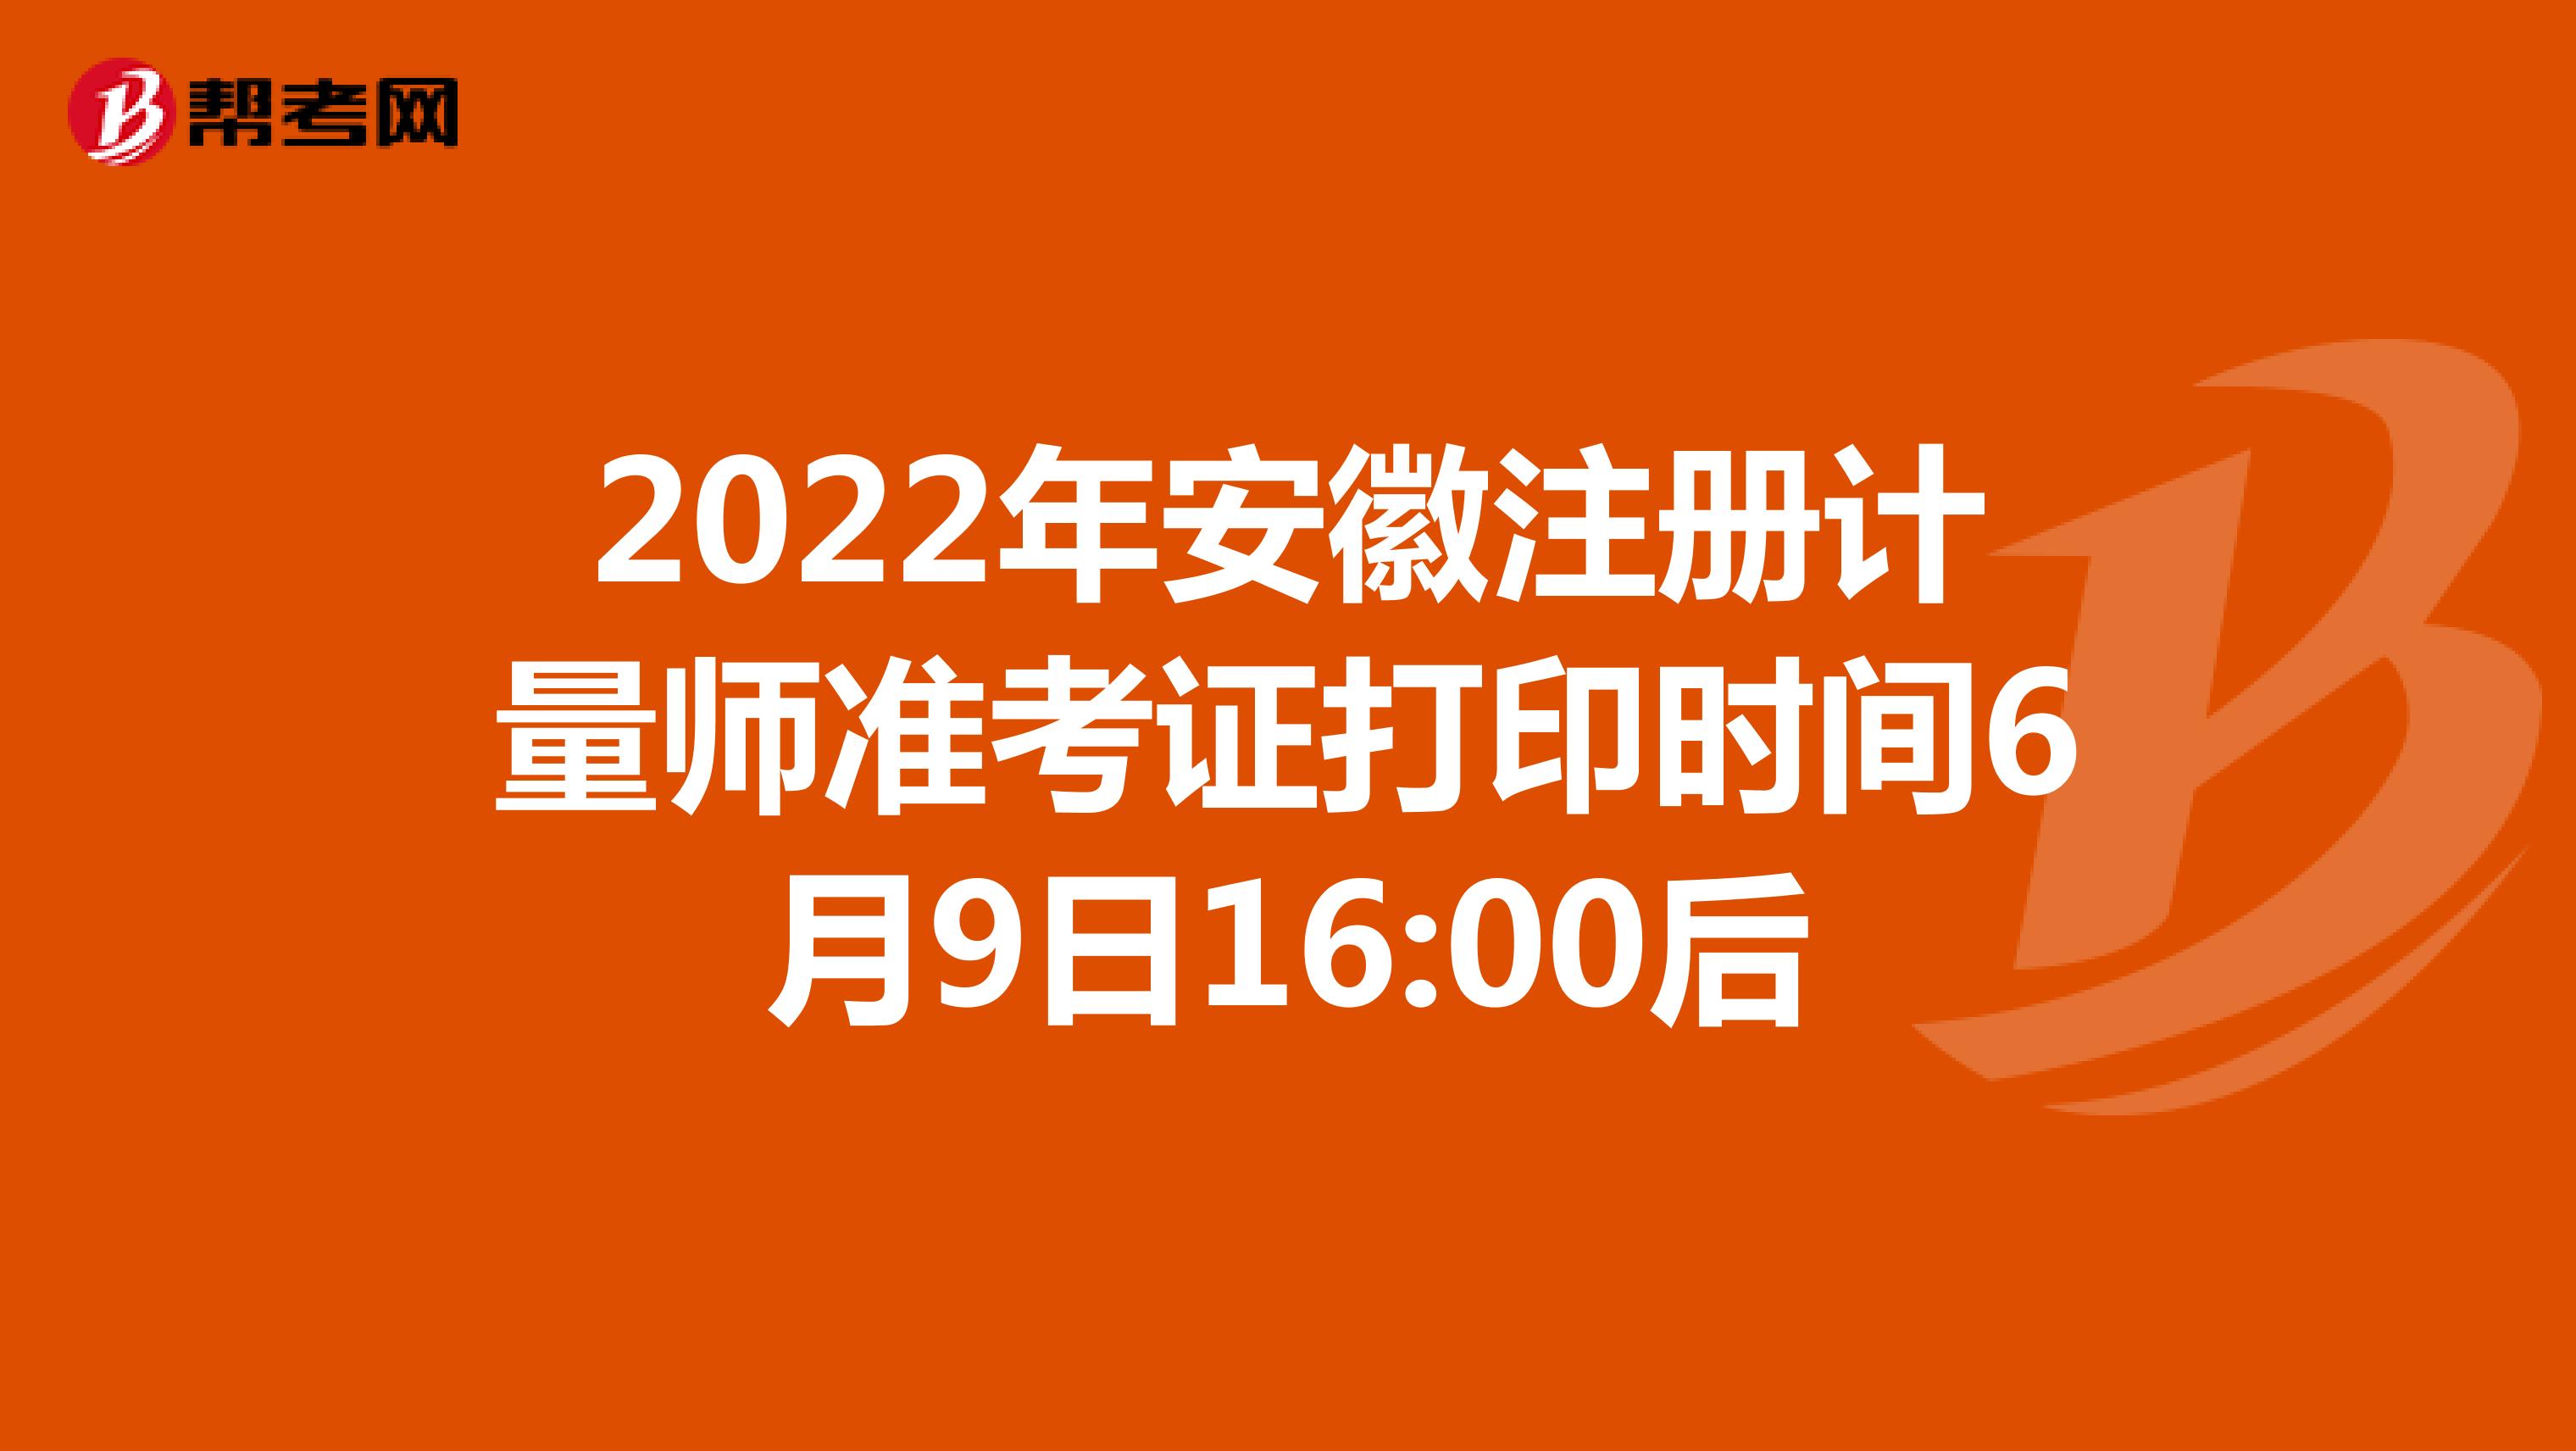 2022年安徽注册计量师准考证打印时间6月9日16:00后